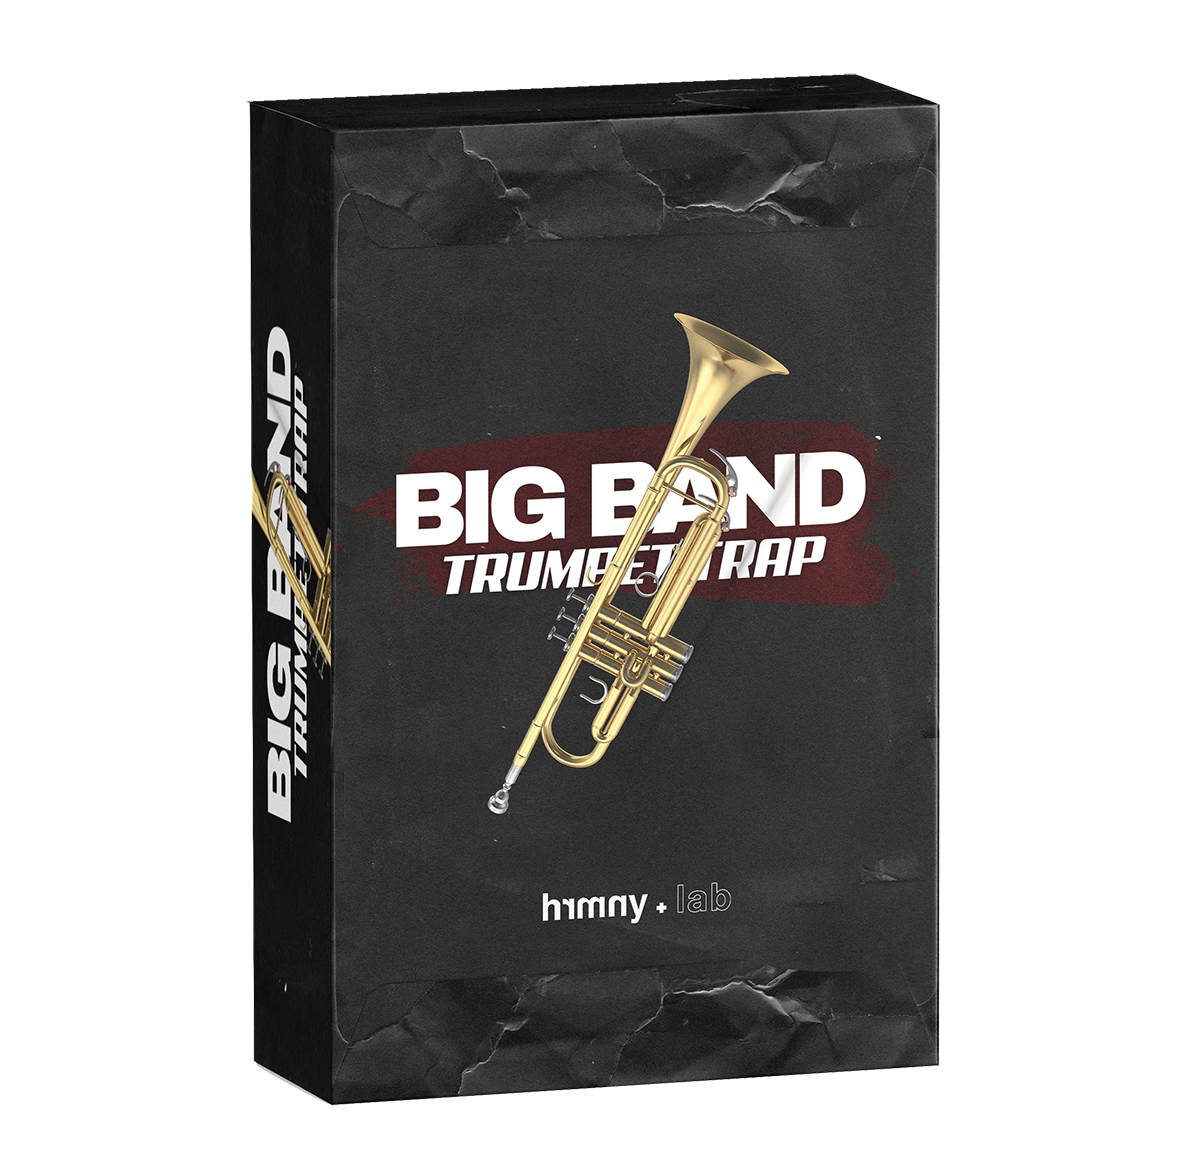 Big Band | Trumpet Trap